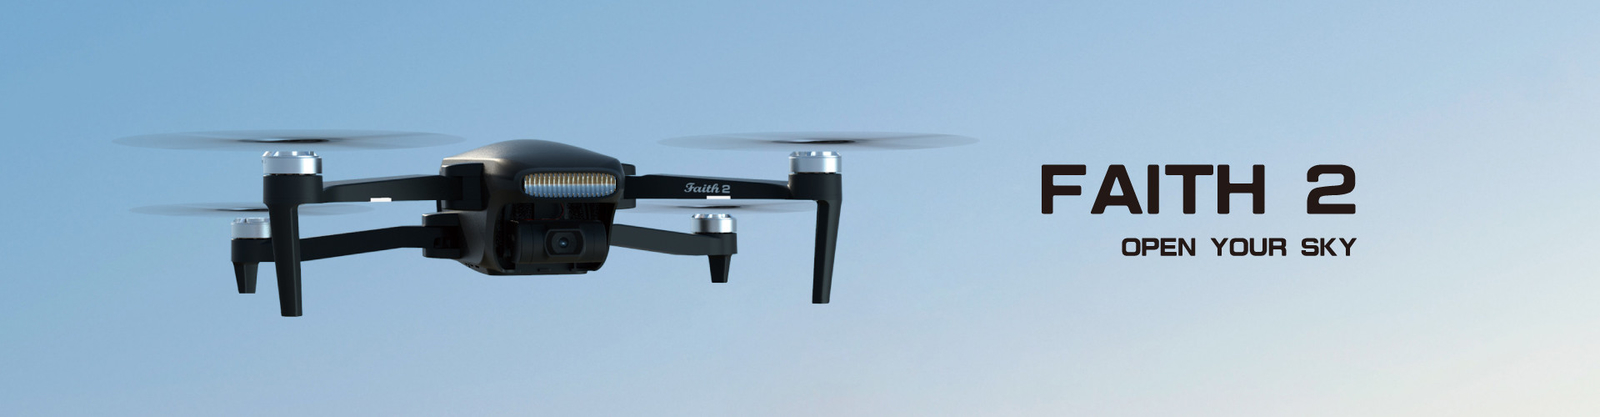 jakość Cfly Drone fabryka